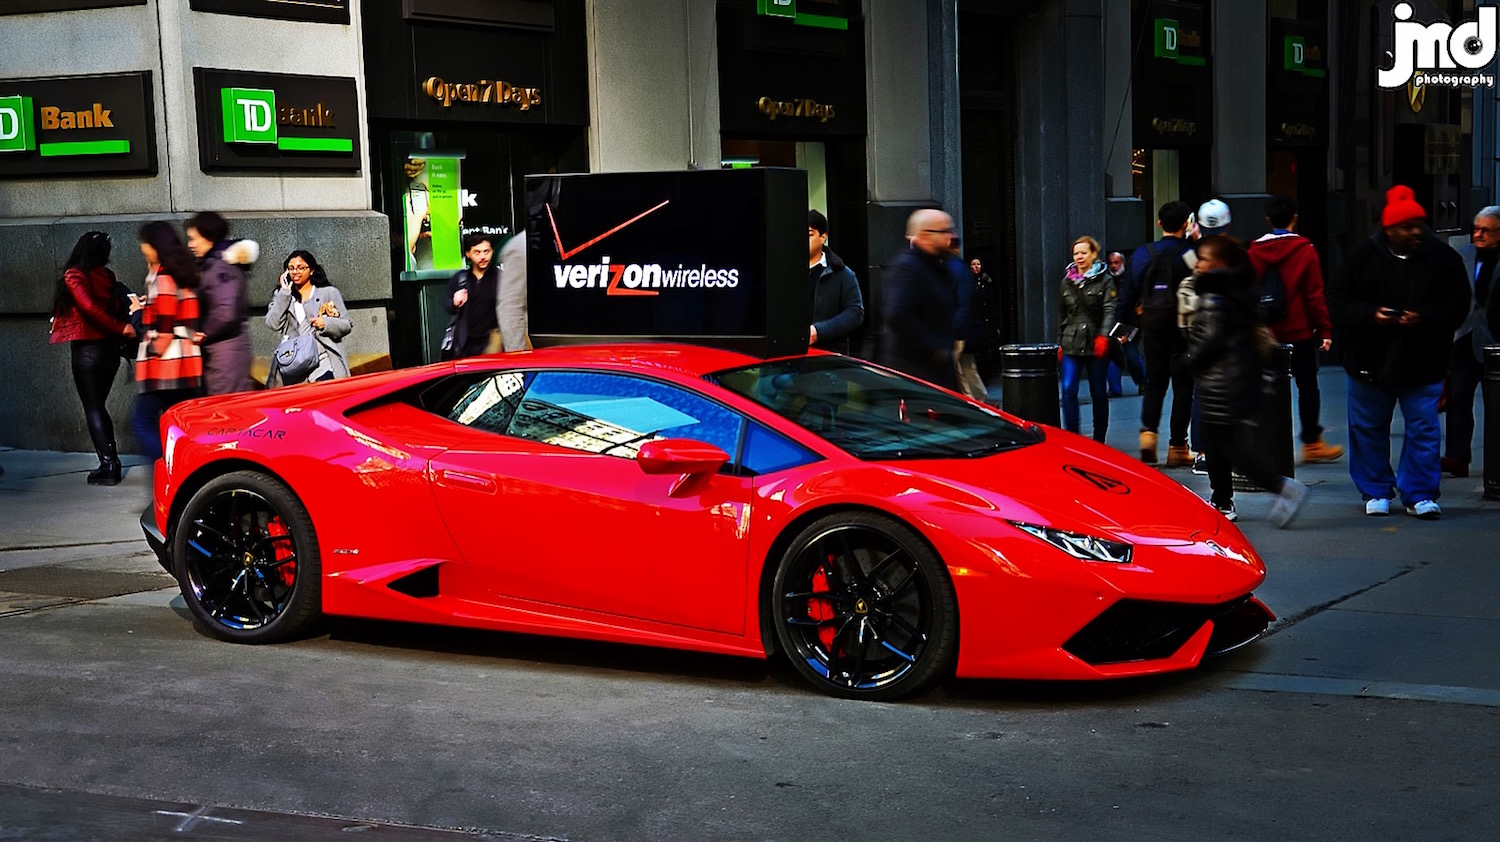 Lamborghini Huracán poseert als reclamebord